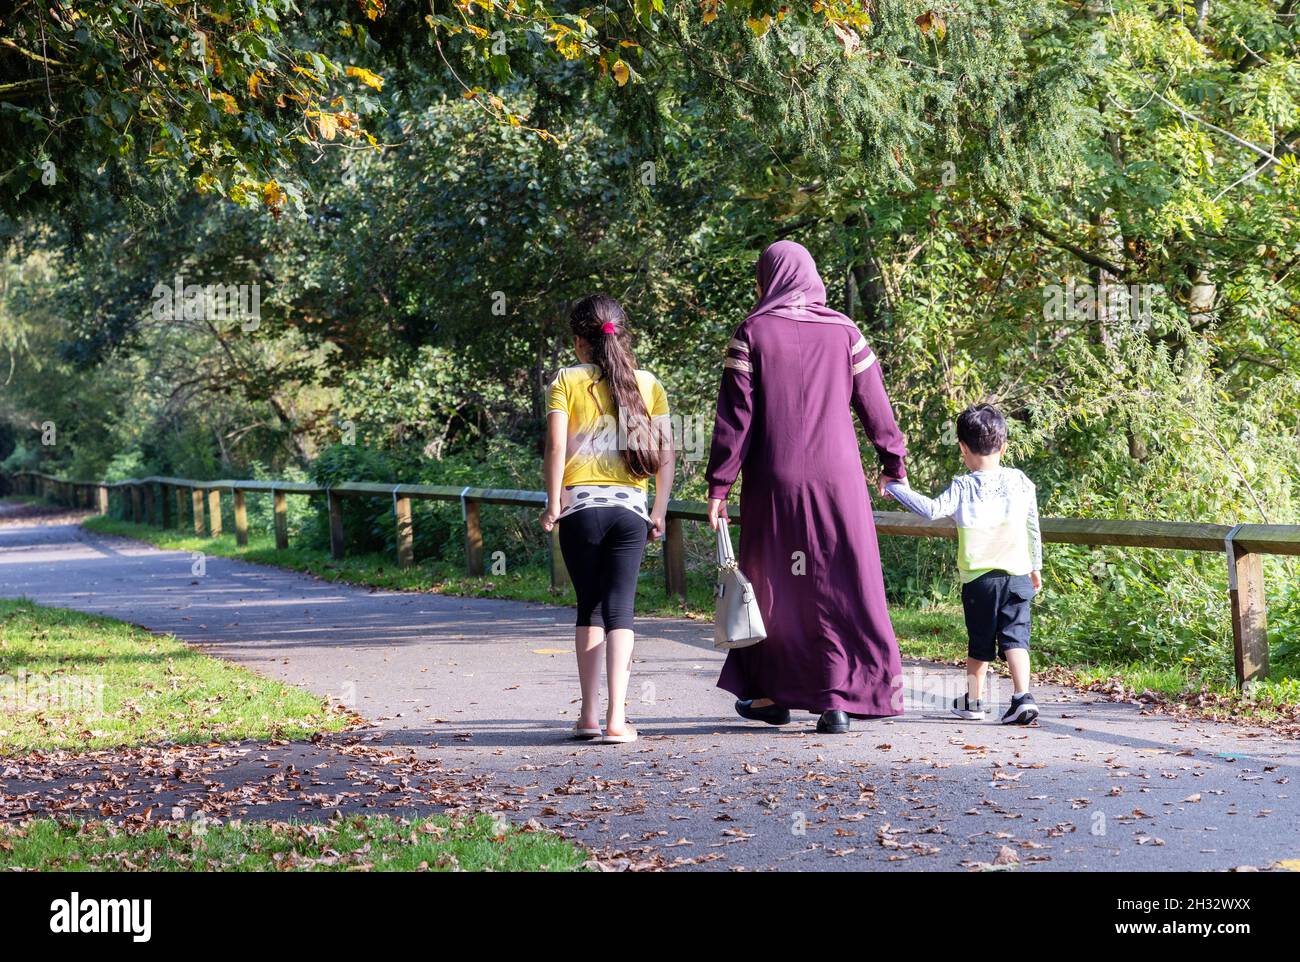 Arabische Familie Großbritannien; eine muslimische Mutter und ihre zwei Kinder, die im Park spazieren, von hinten gesehen, Salisbury Wiltshire Großbritannien Stockfoto